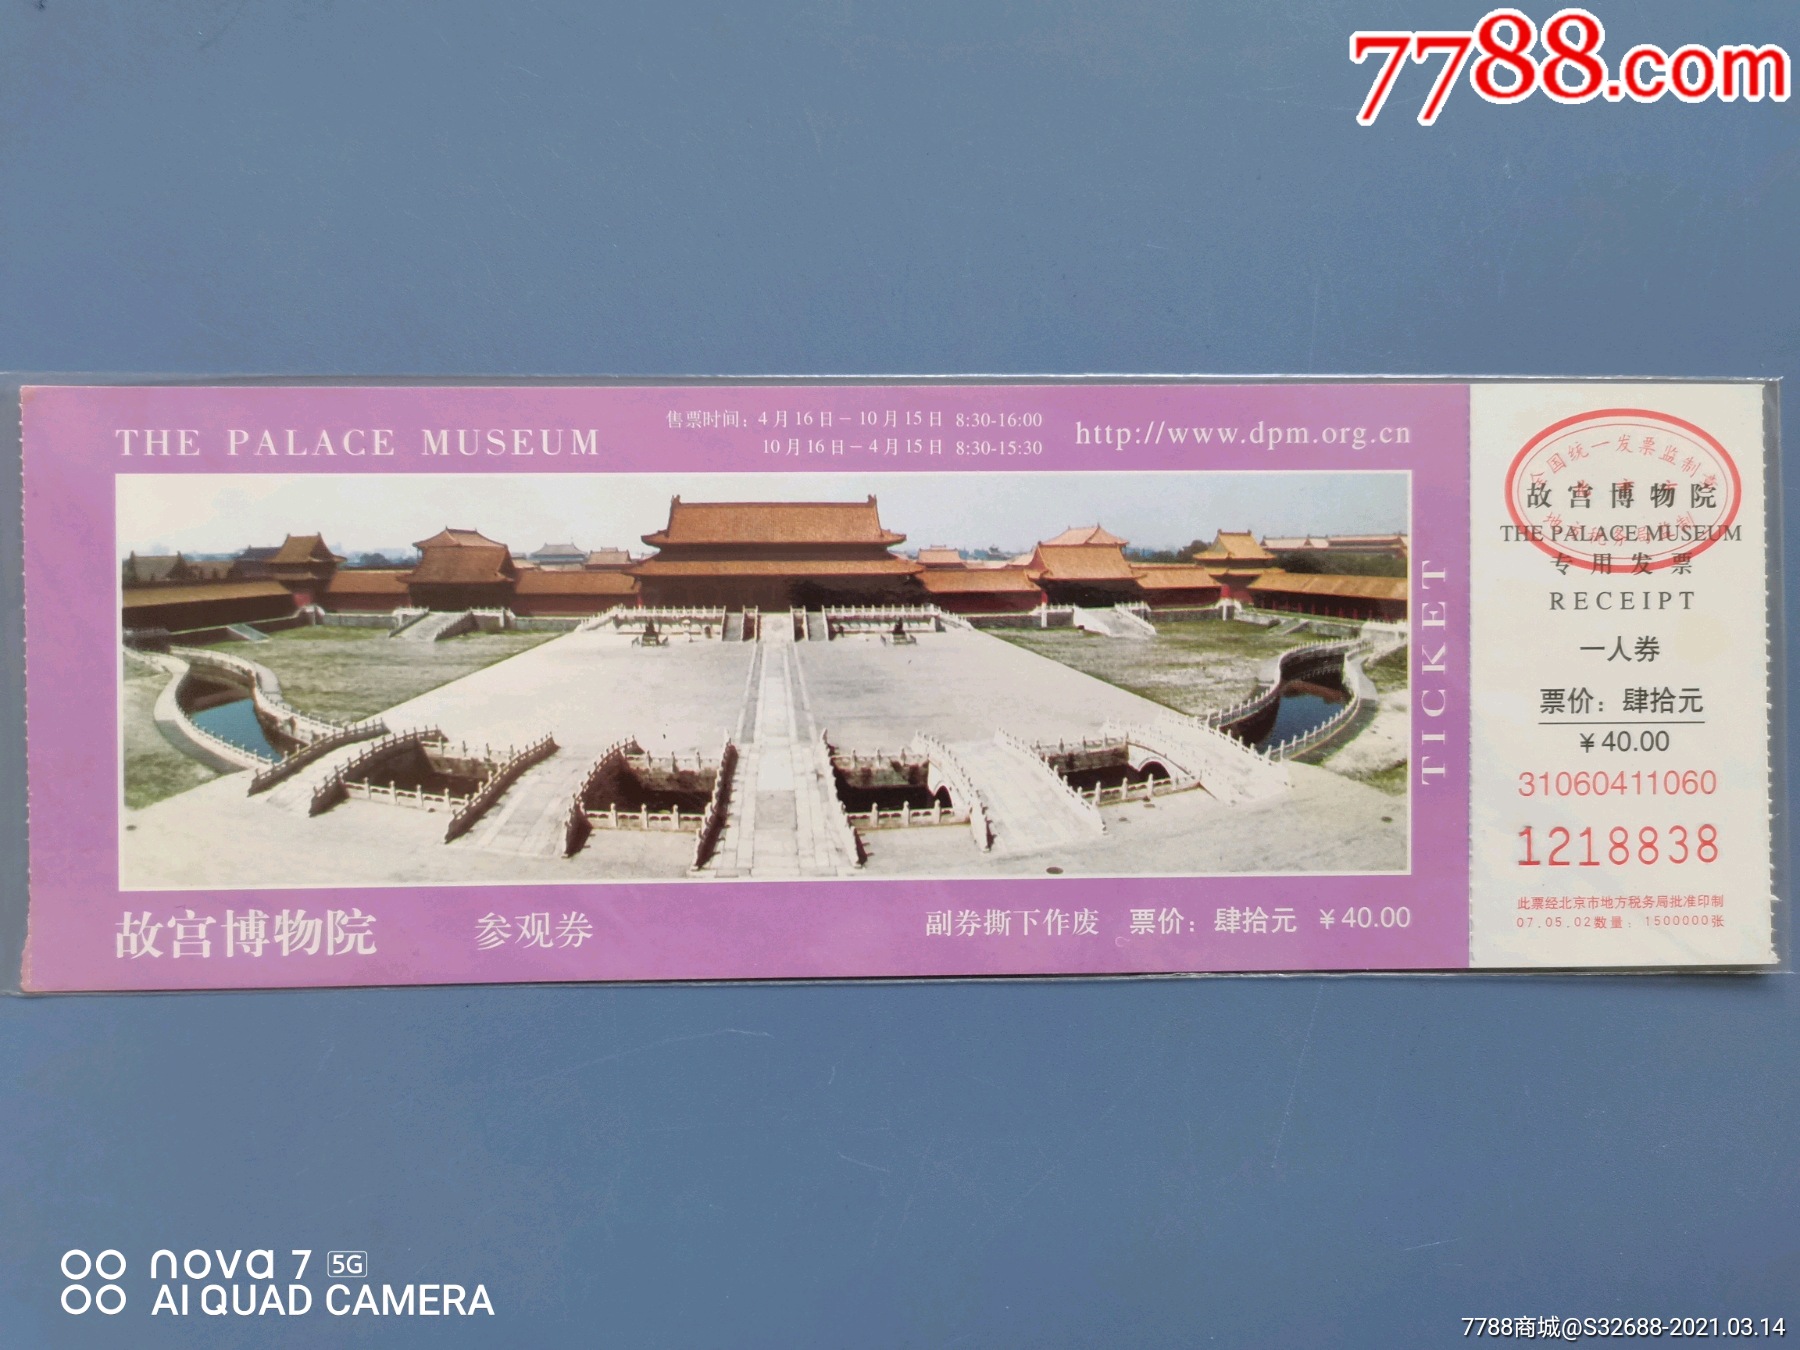 故宫博物院-旅游景点门票-7788票证网